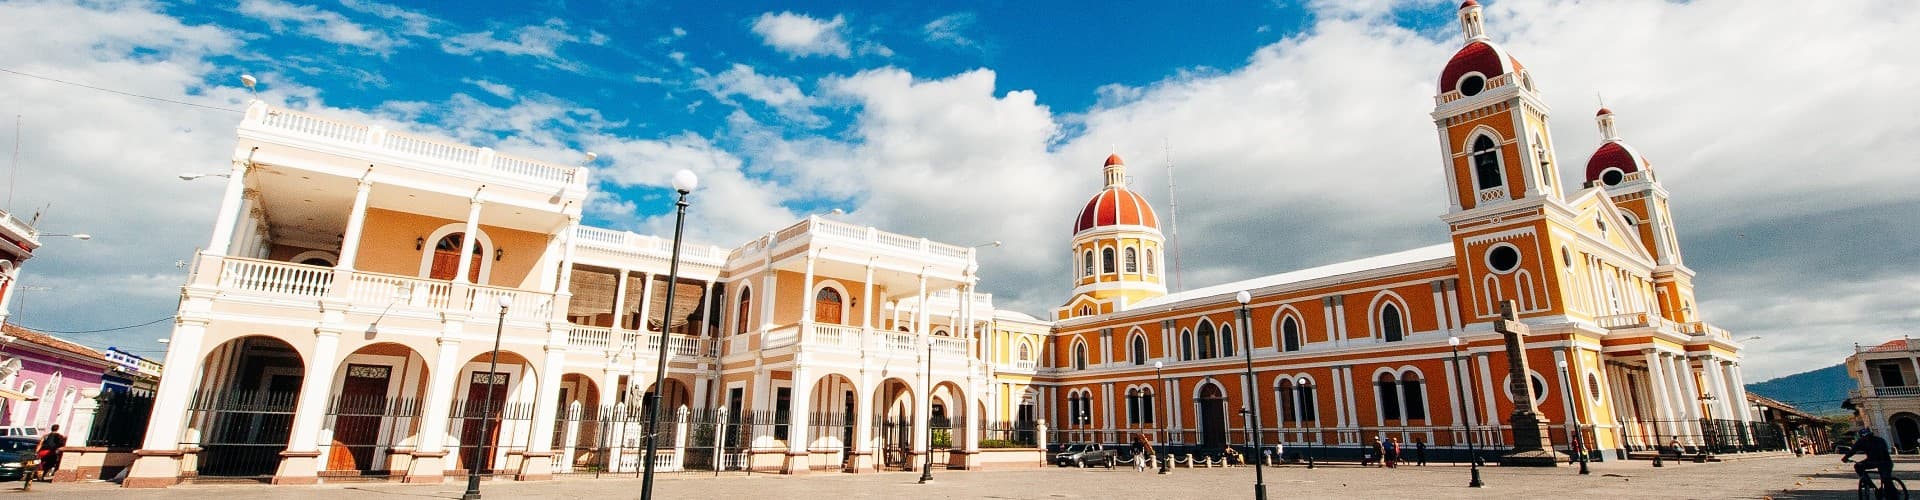 Granada Nicaragua Skyline